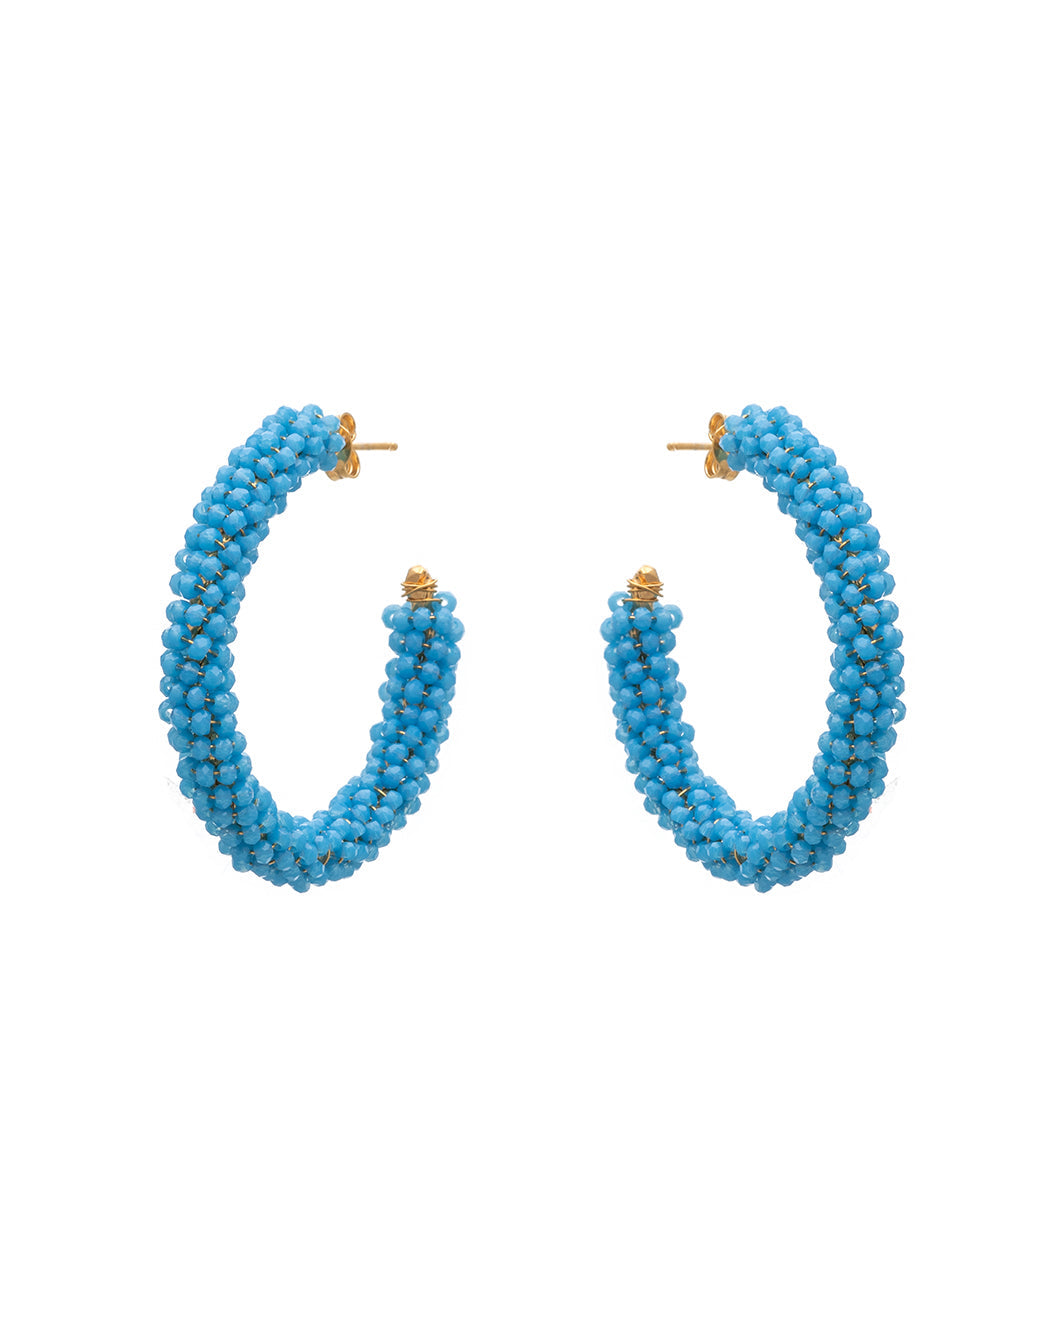 Boubouki earrings